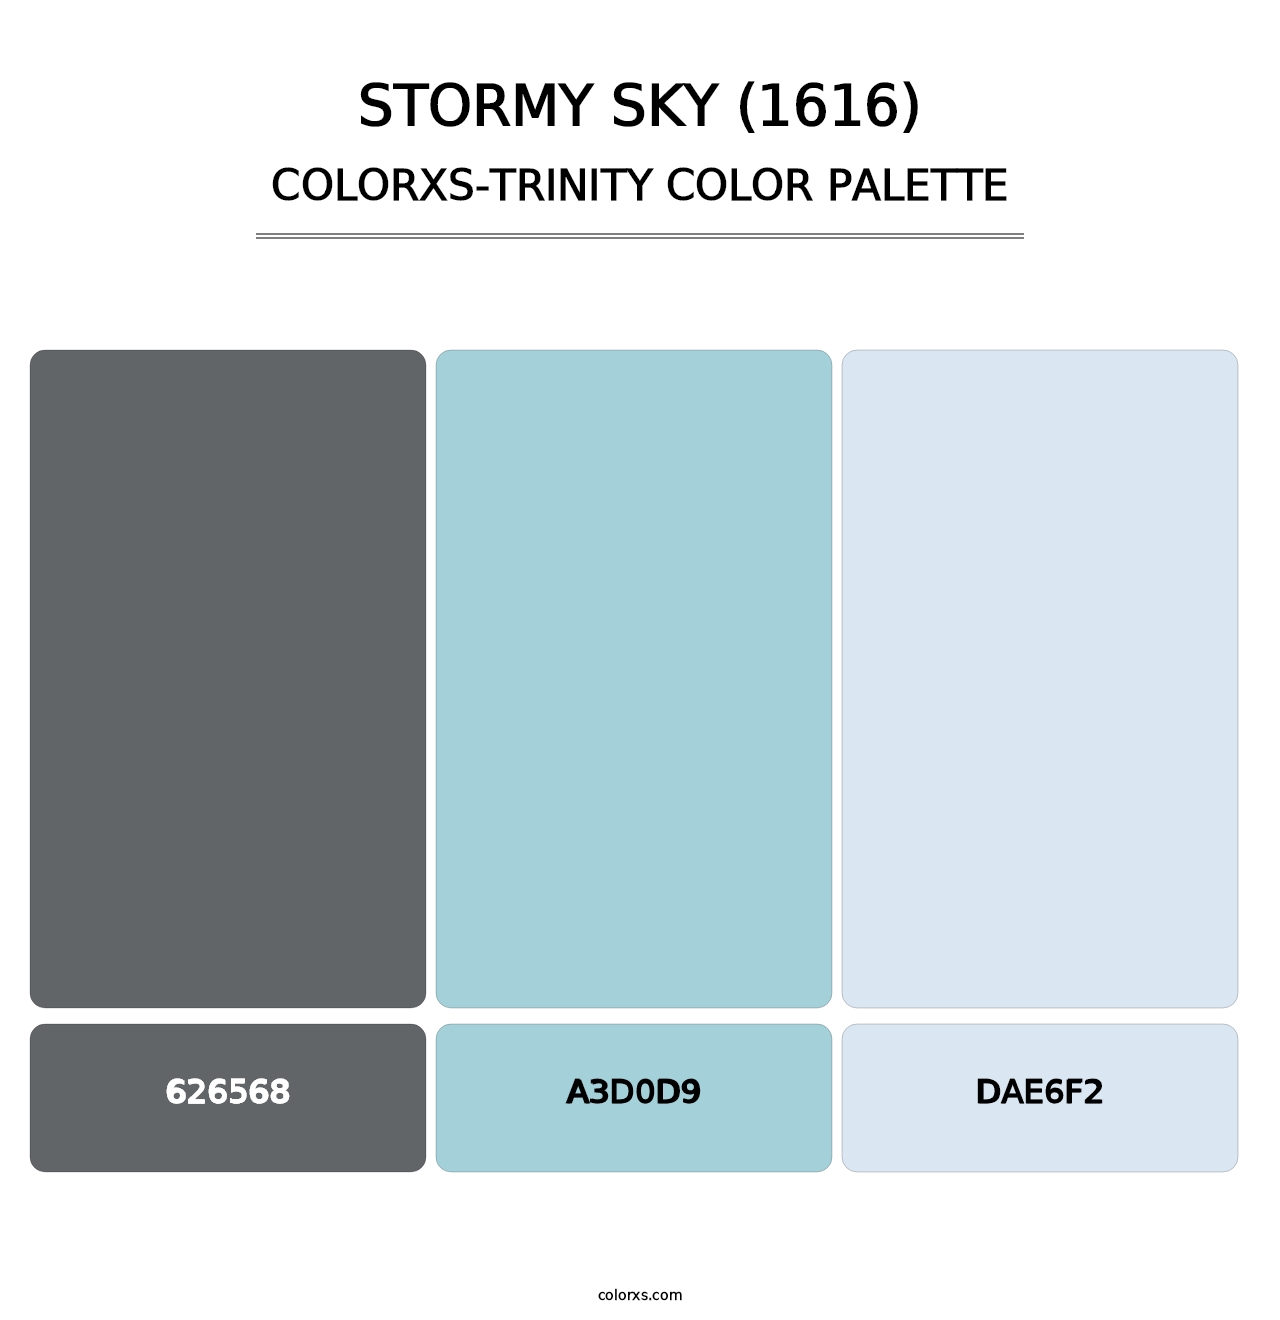 Stormy Sky (1616) - Colorxs Trinity Palette